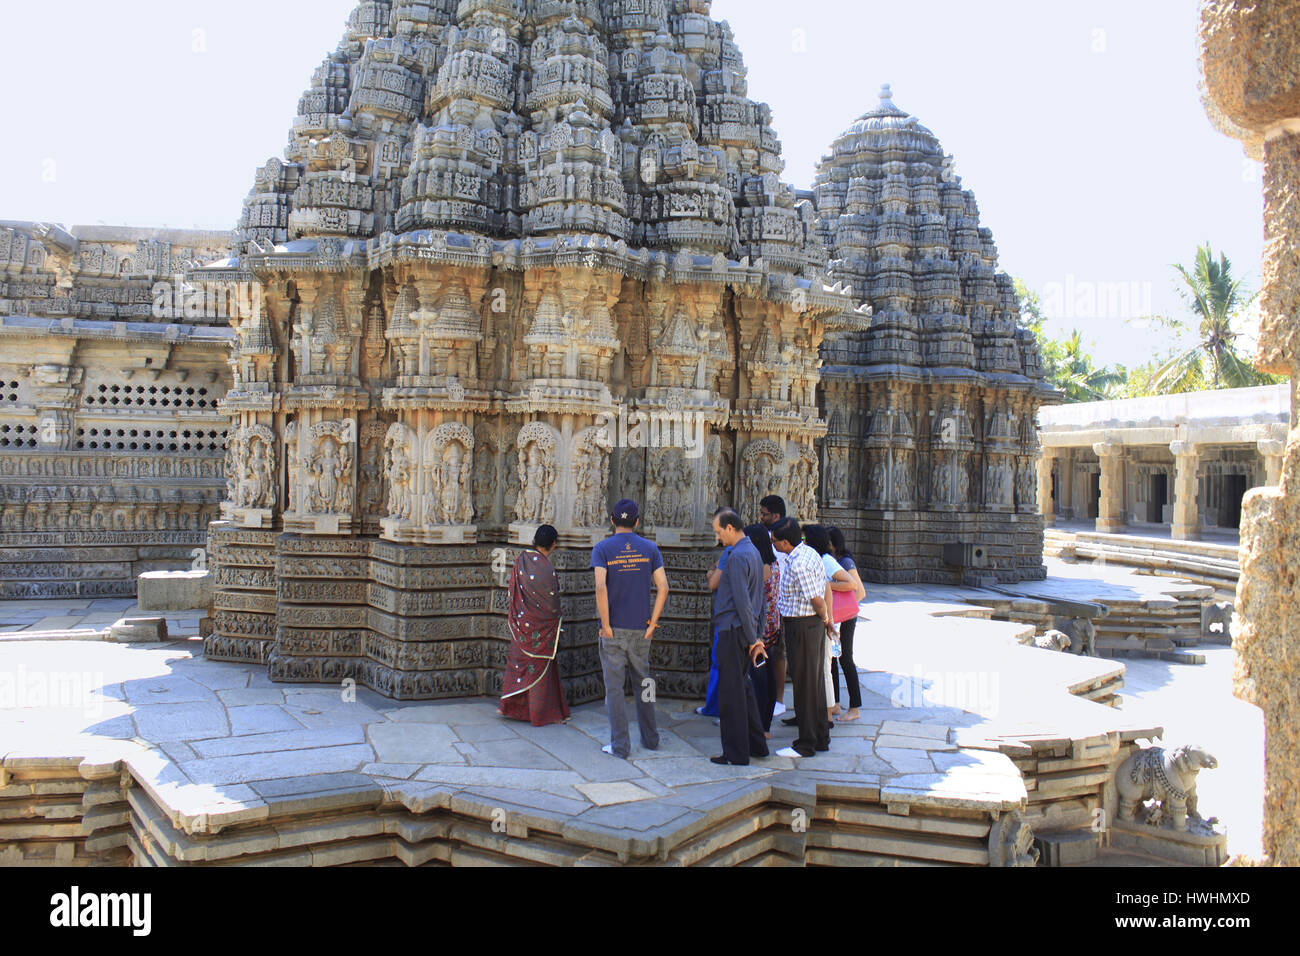 Los turistas admirando las esculturas de piedra de los principales santuarios en el templo Chennakesava, arquitectura de Hoysala, Somnathpur, Karnataka, India Foto de stock